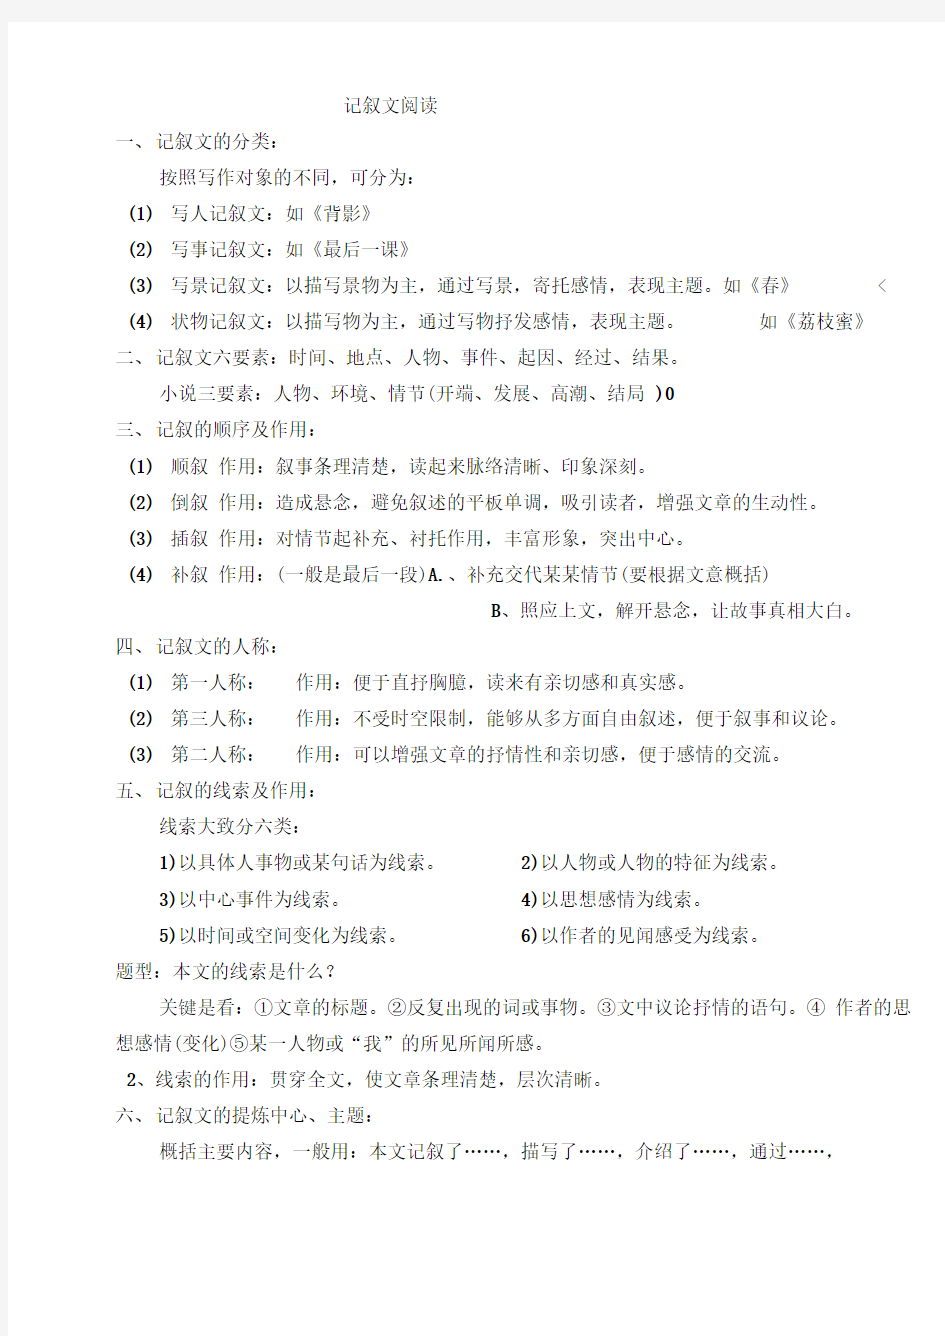 初中语文阅读答题技巧模板